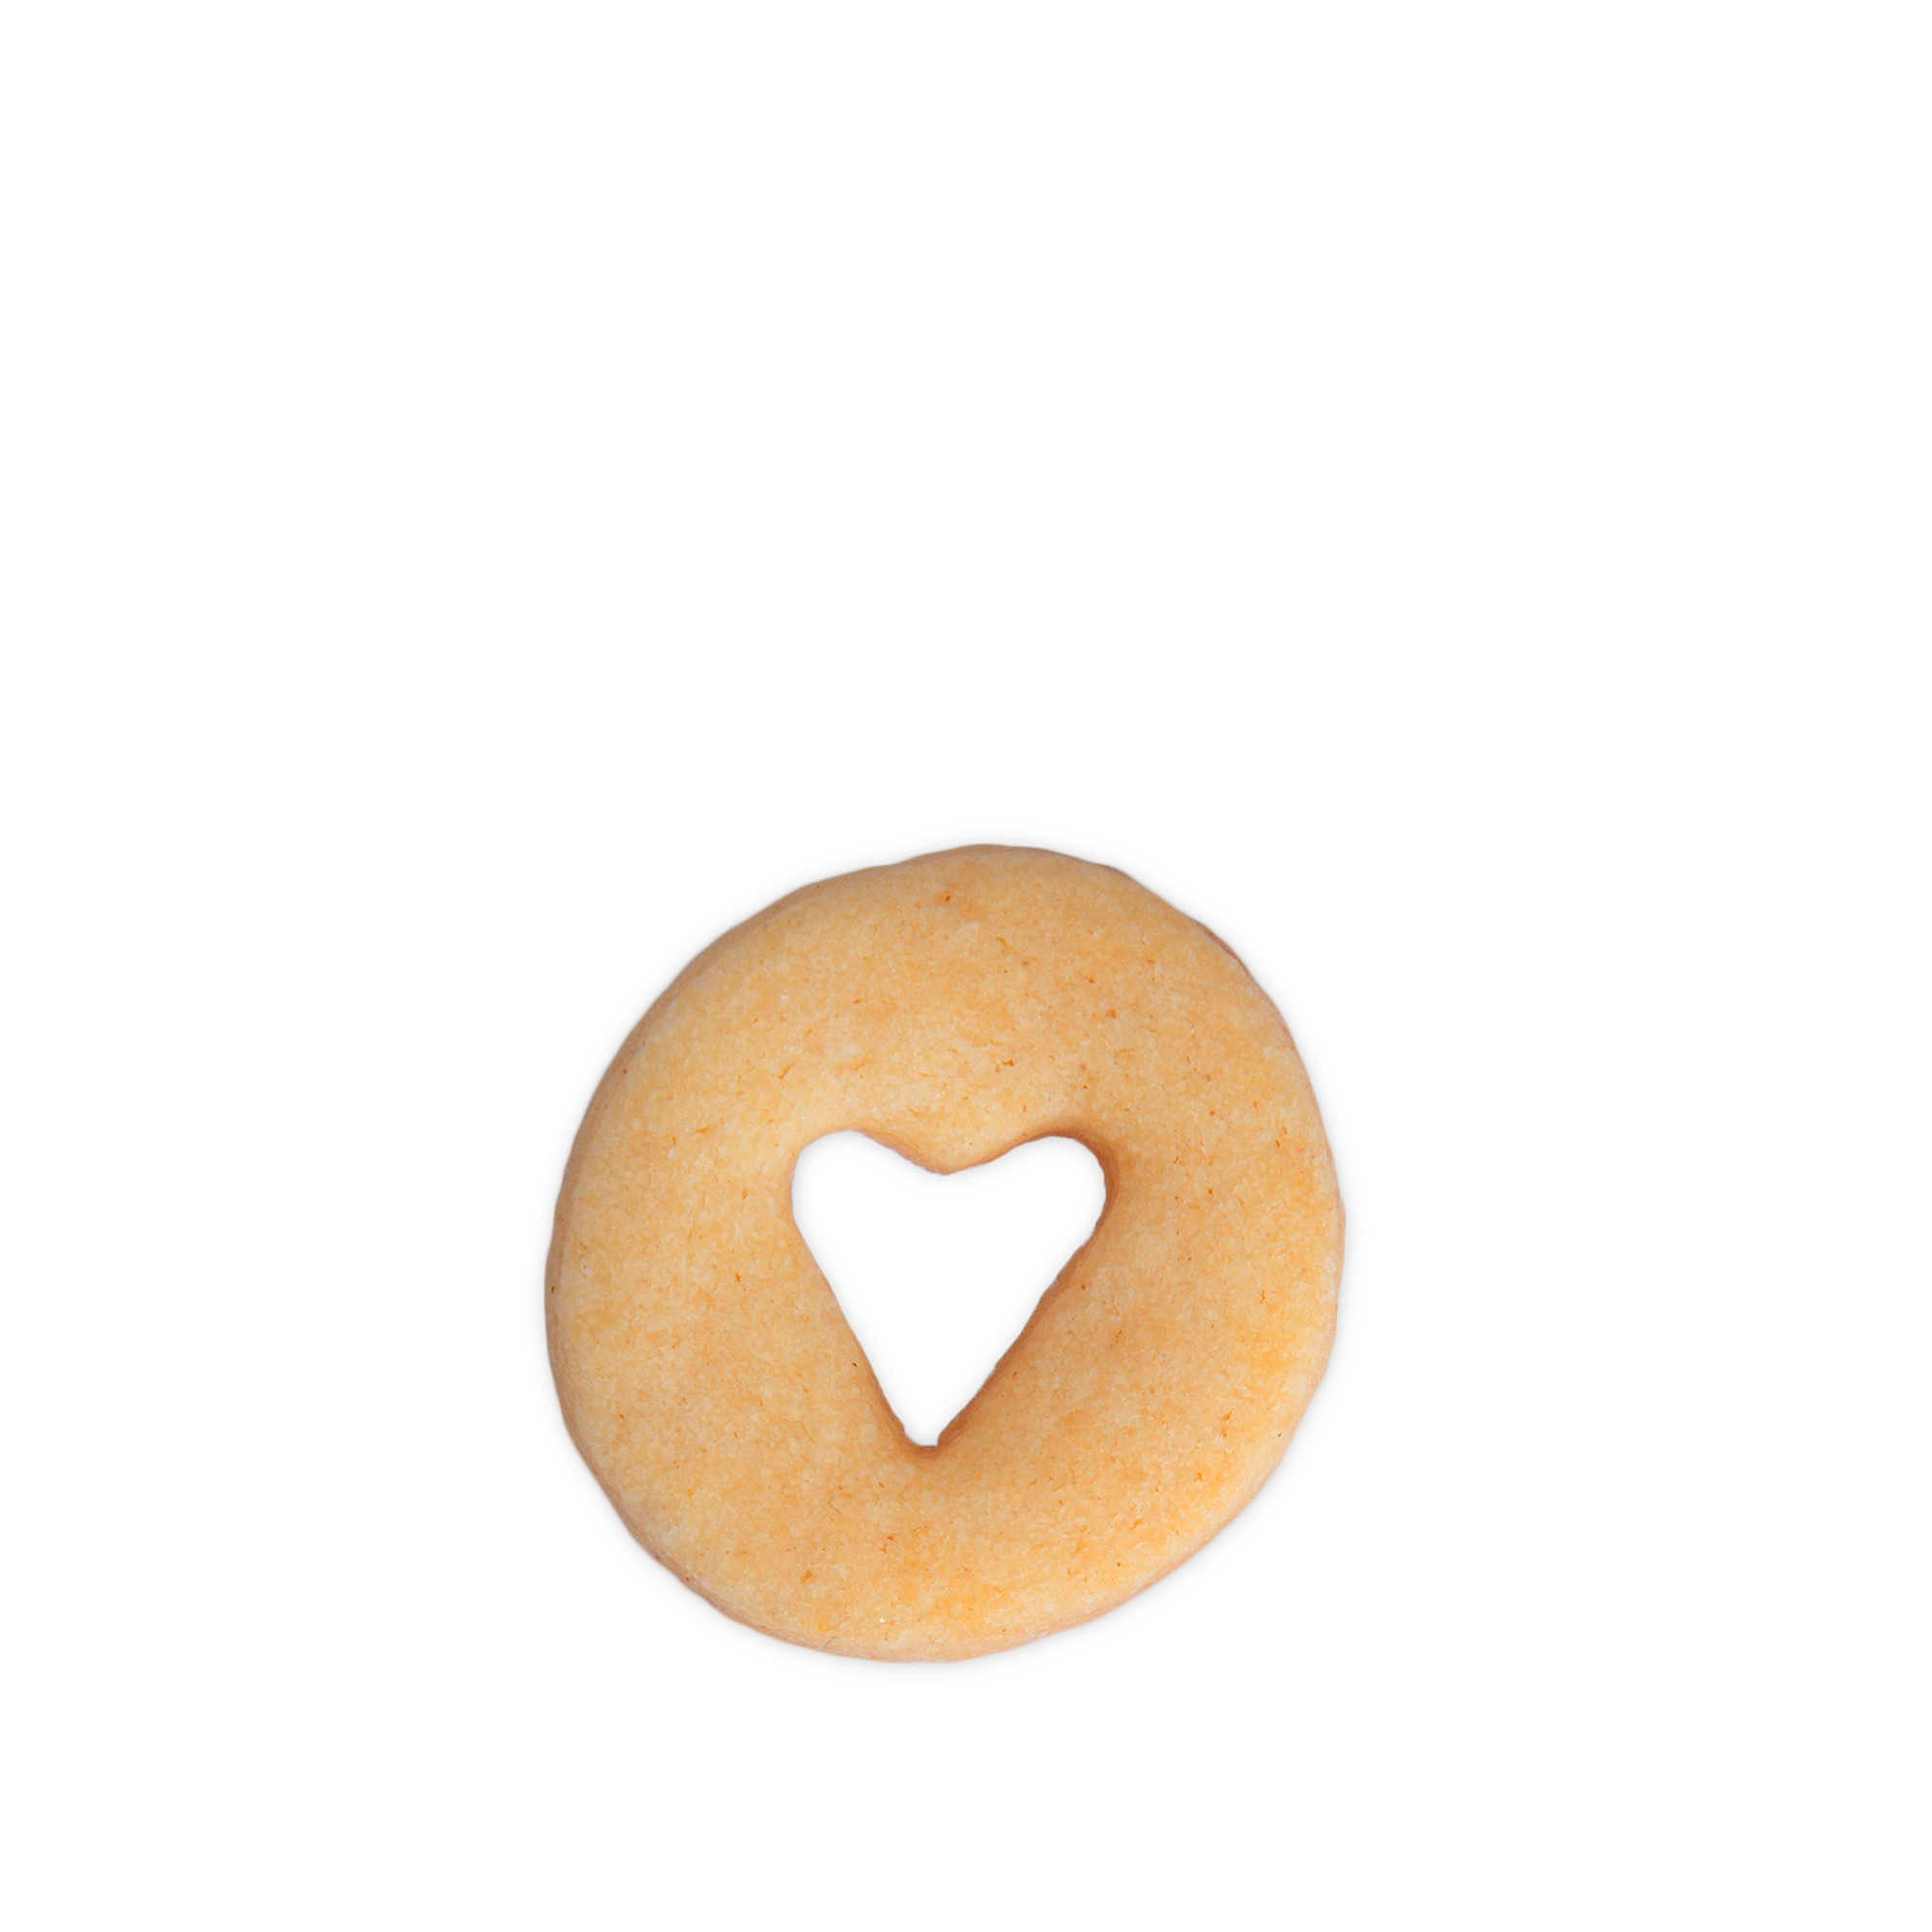 Städter - cookie cutter mini - 3cm heart in ring